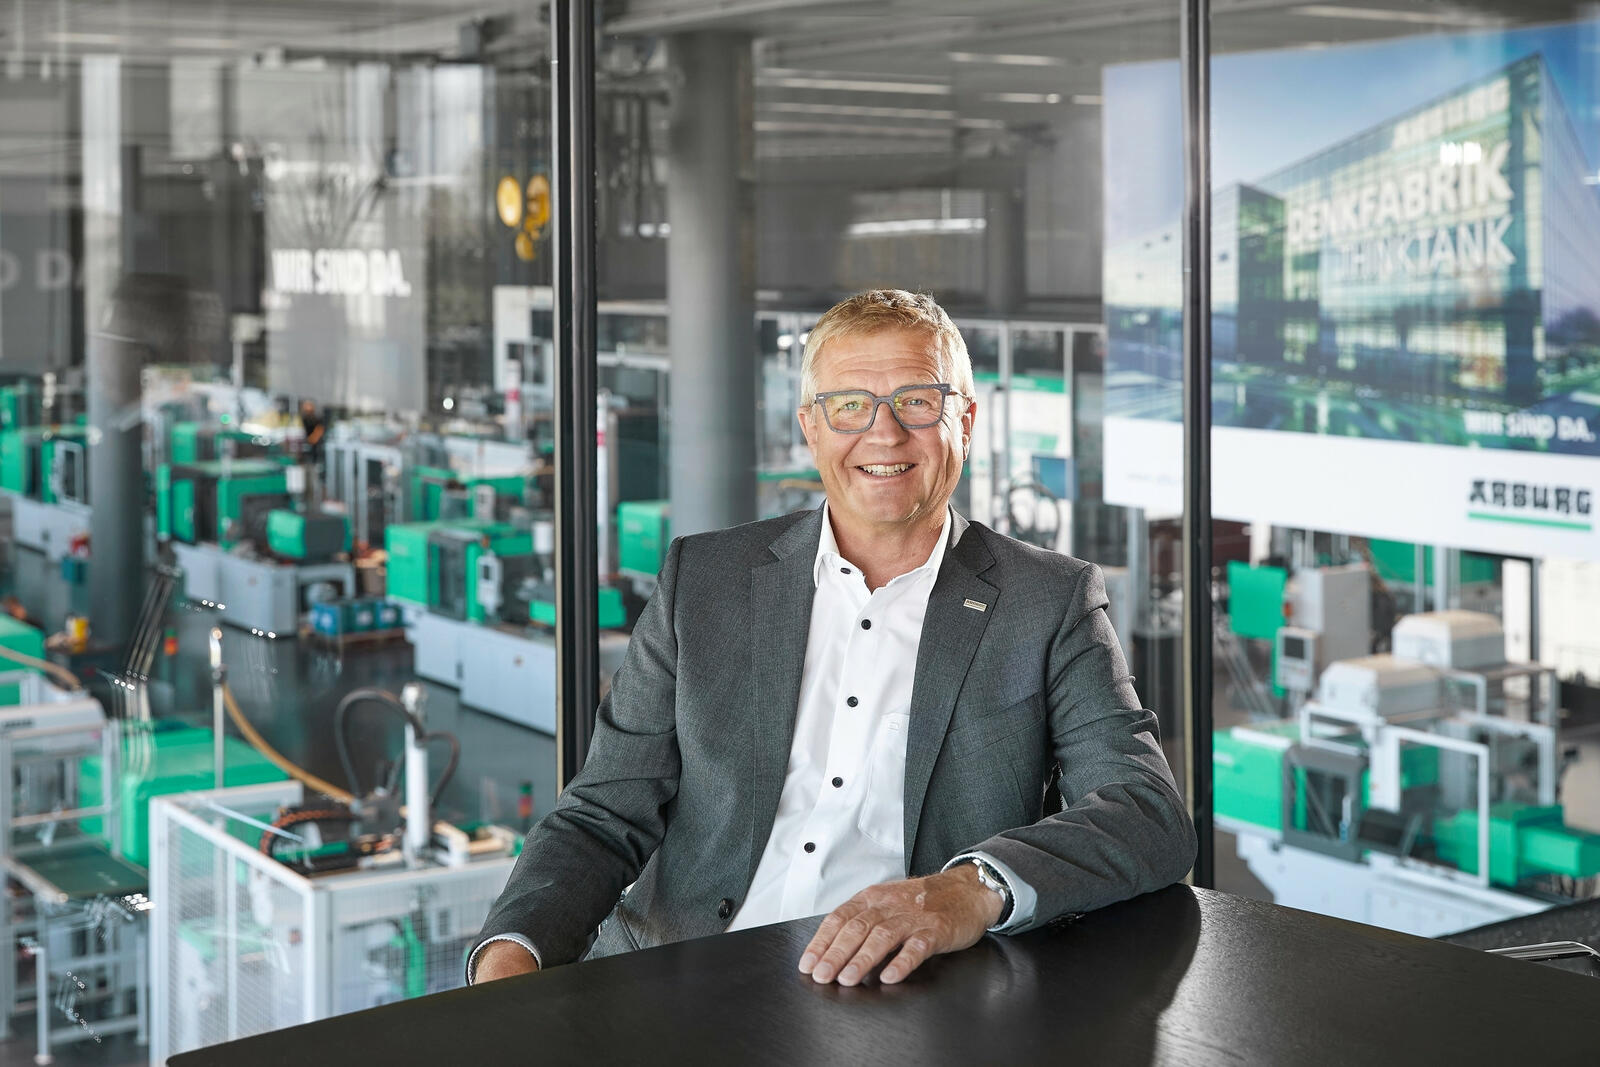 Gerhard Böhm, Geschäftsführer Vertrieb und Service bei Arburg, berichtet, dass der Auftragseingang für Spritzgießmaschinen Anfang 2021 so hoch wie noch nie in der Unternehmensgeschichte von Arburg war. Nun ist allerdings eine Absatzberuhigung eingetreten.